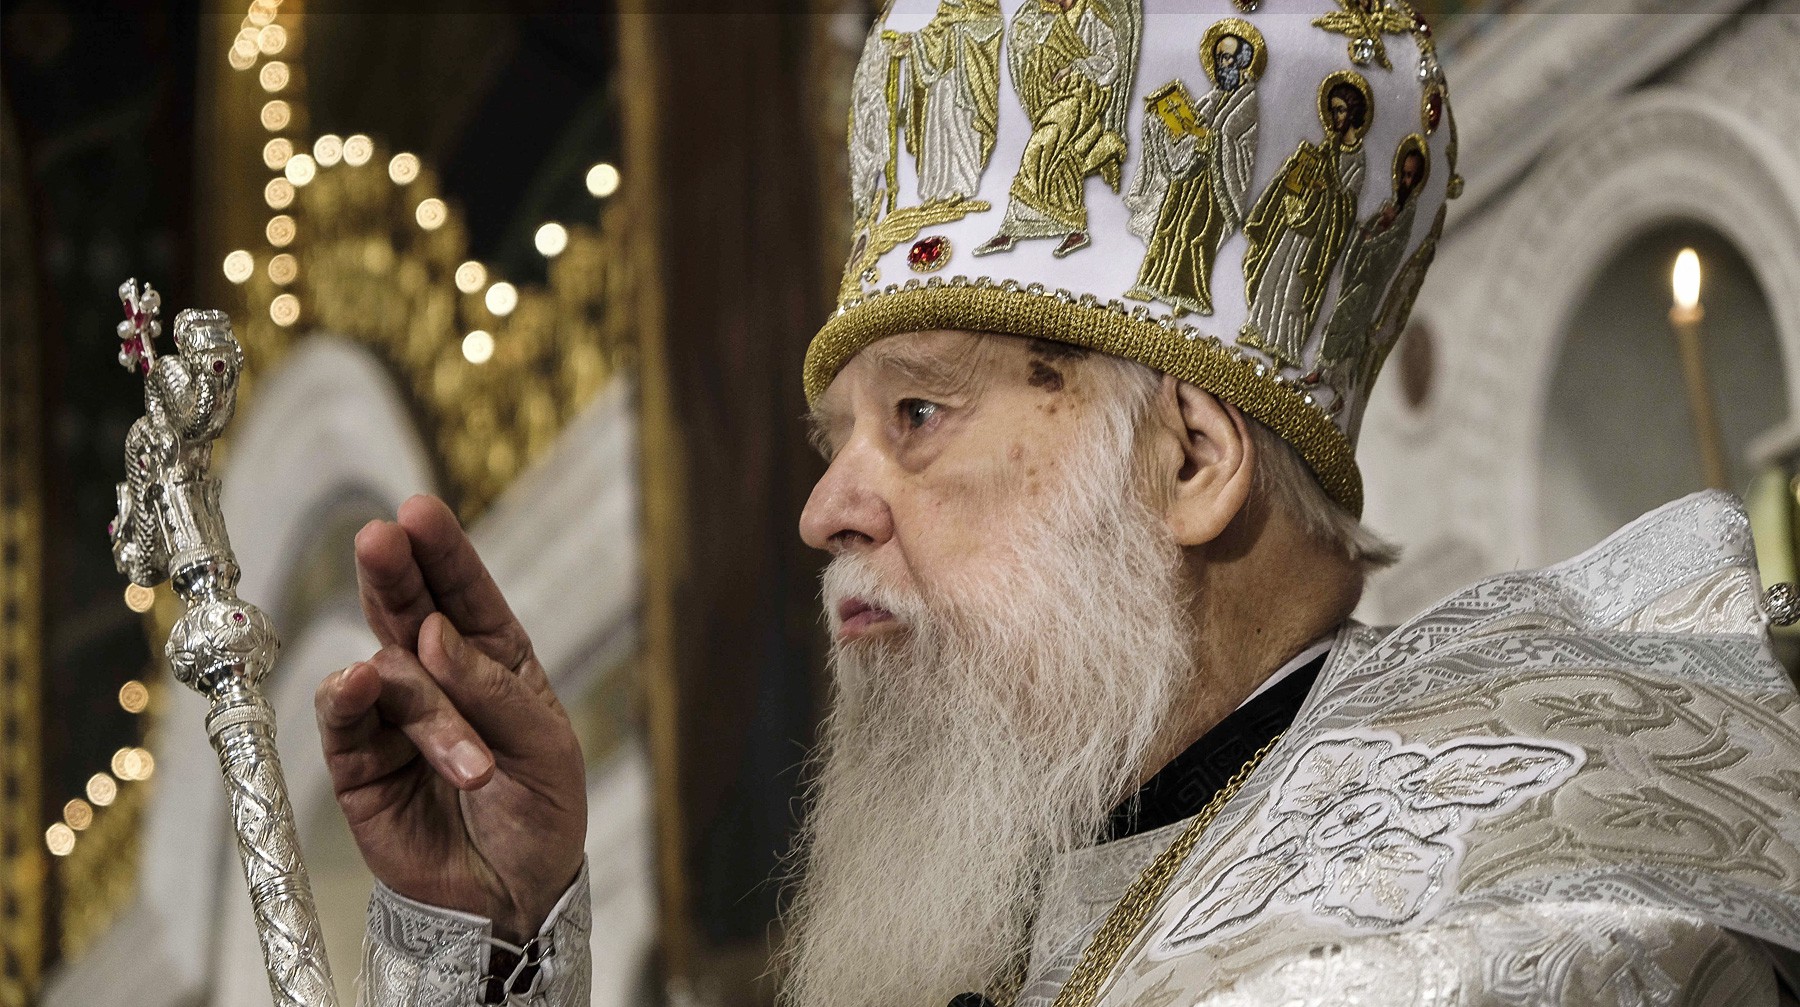 Dailystorm - Экс-патриарх УПЦ КП Филарет попросил МВД Украины защитить верующих от «рейдерства» ПЦУ